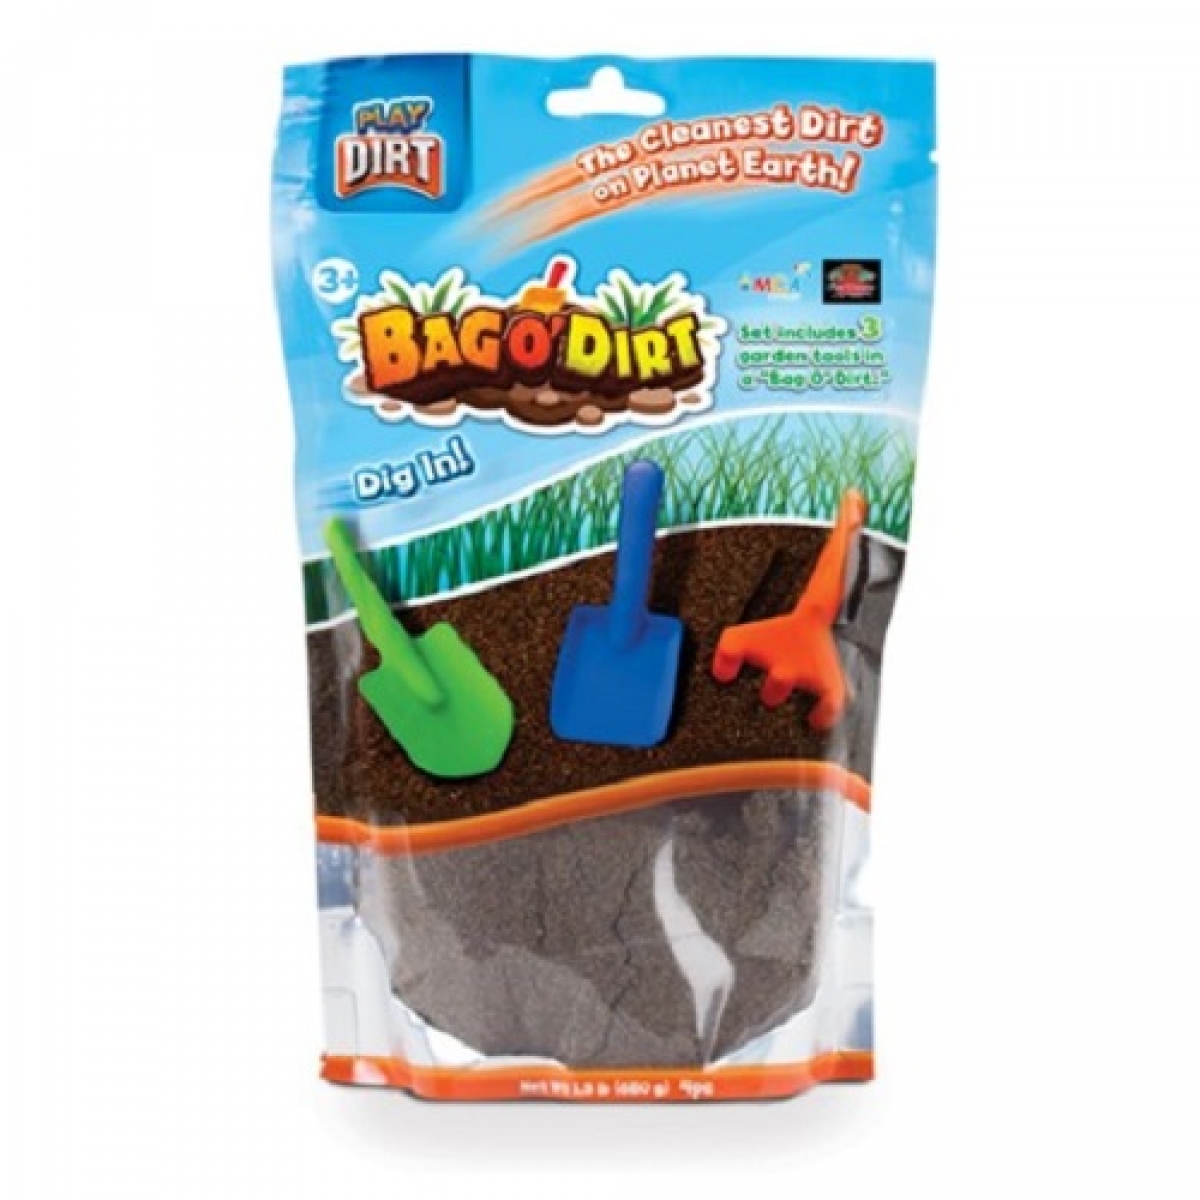 Bag O' Dirt - Bag of Play Dirt - Bag of Fake Soil - Bag of Dirt